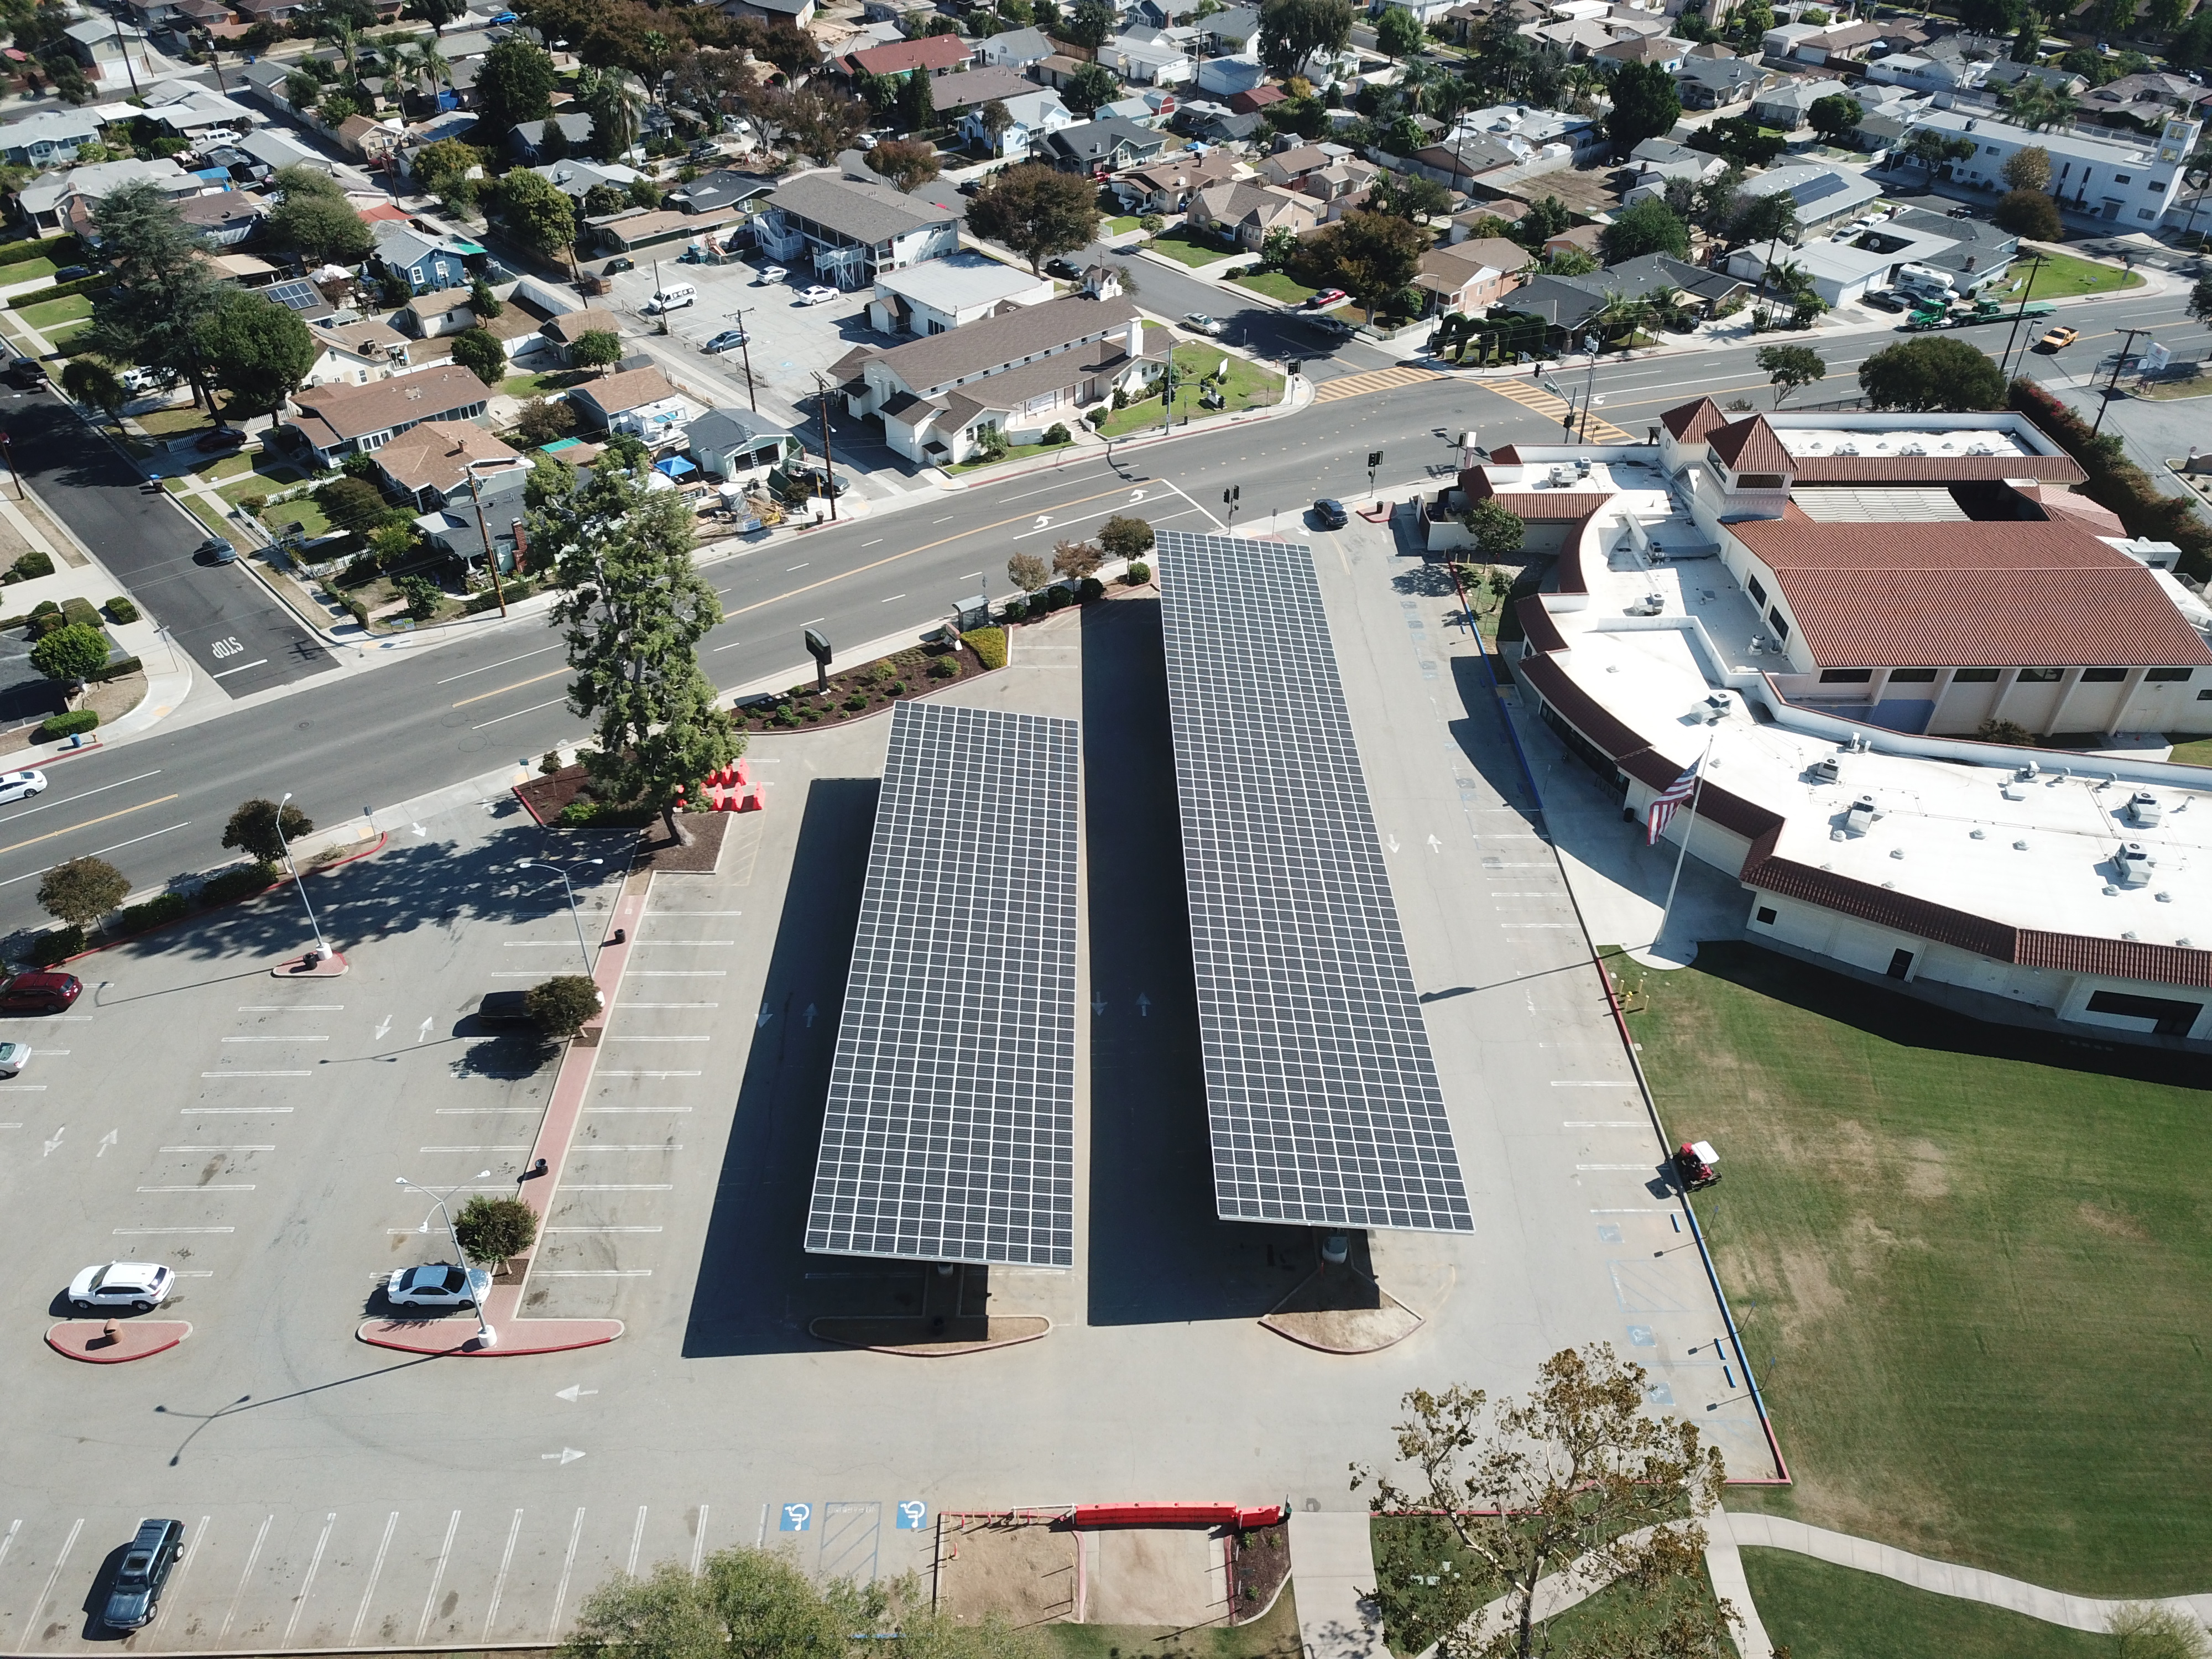 Drone Image of Solar Panels in City of La Puente